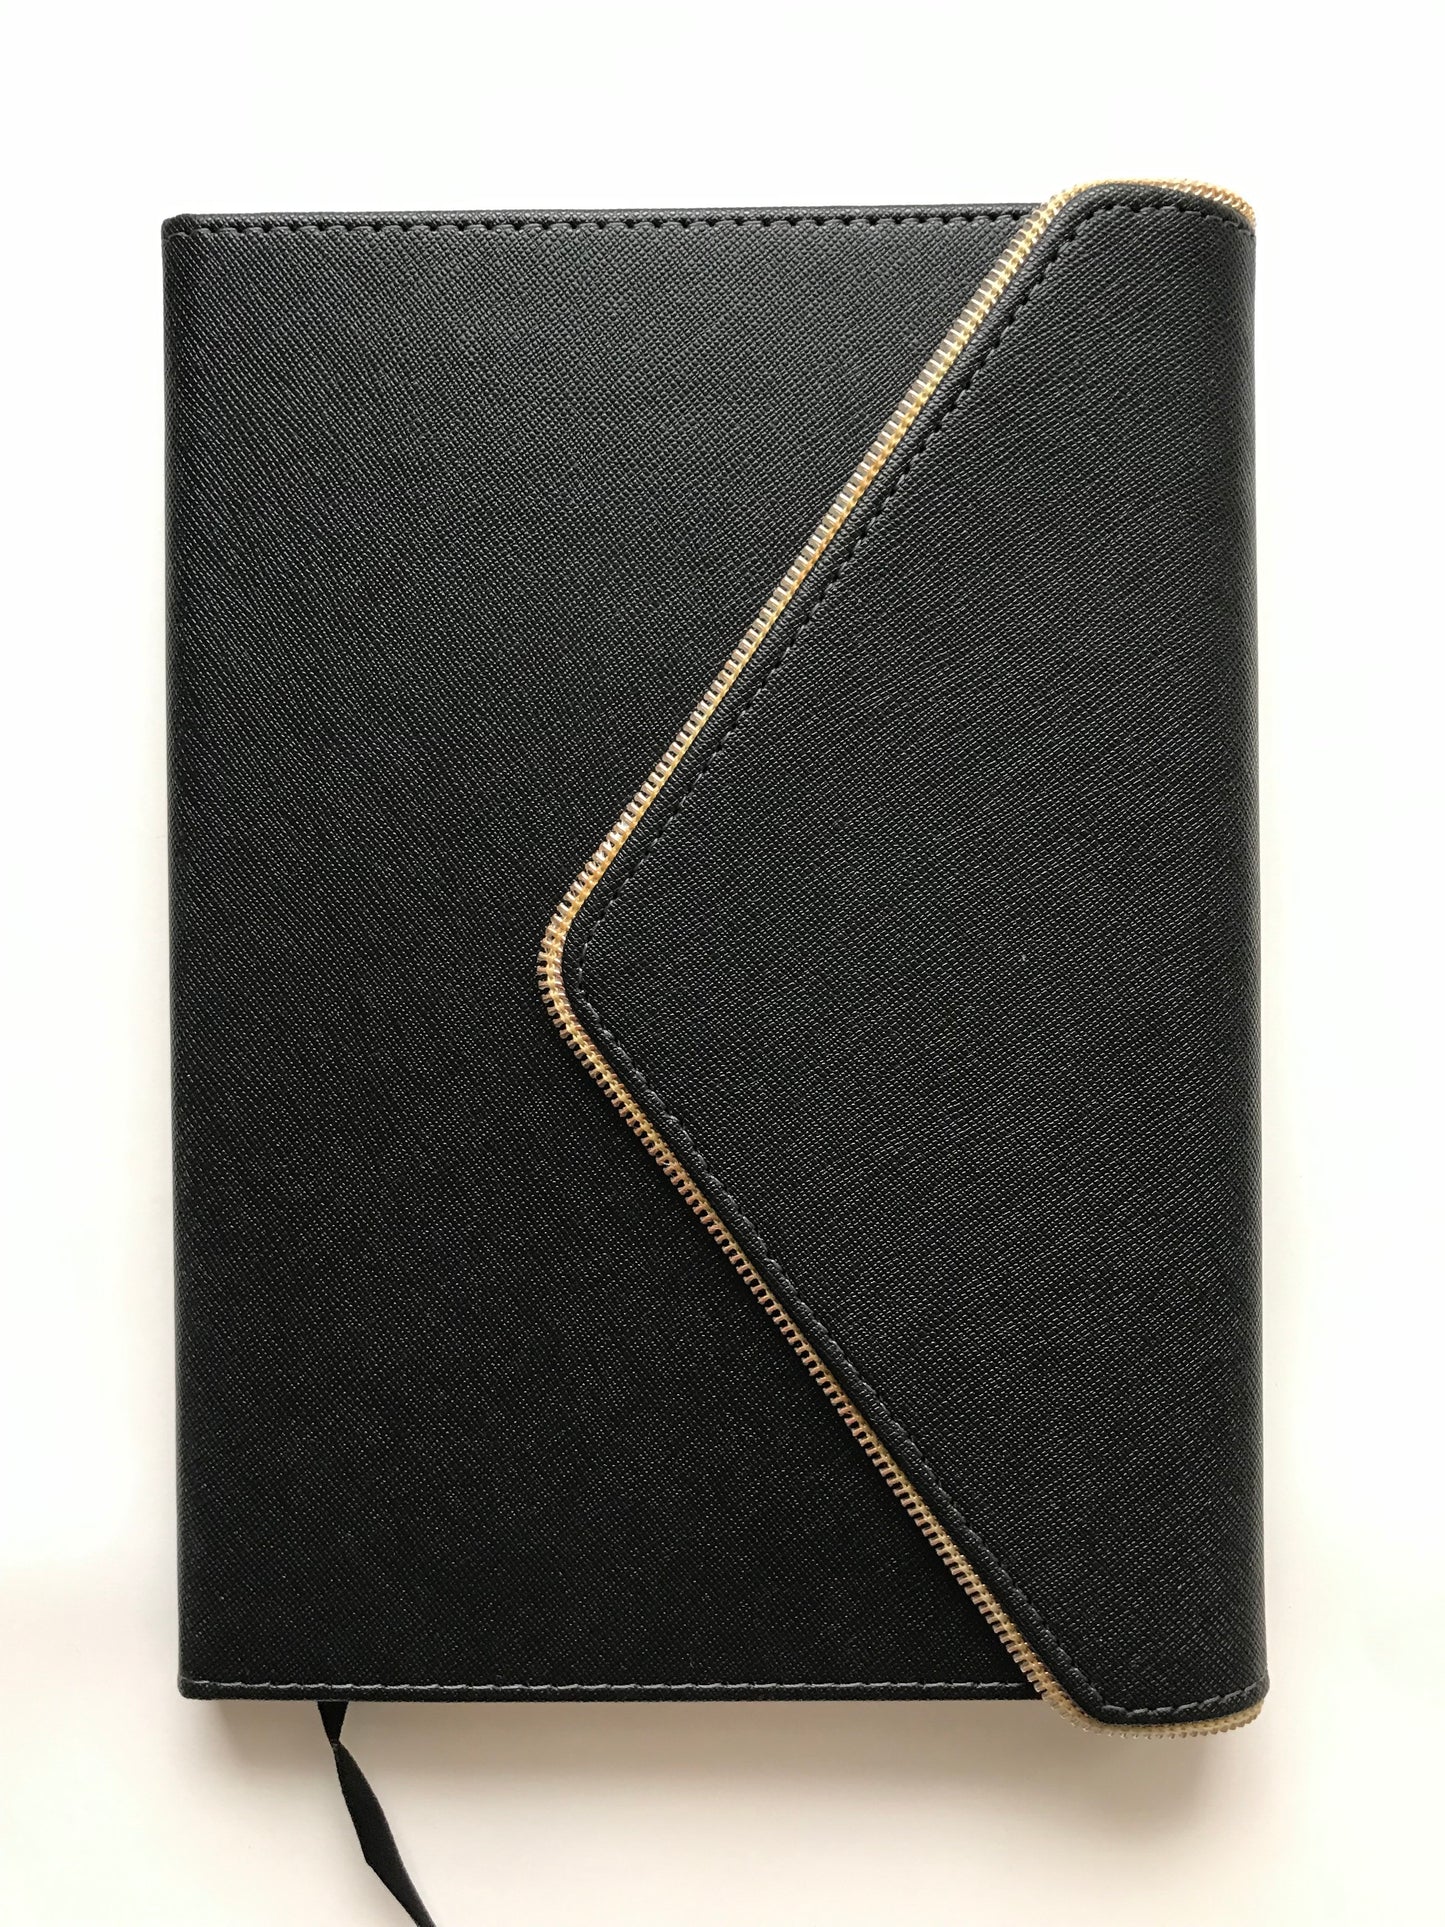 Purse - Notebook/Journal